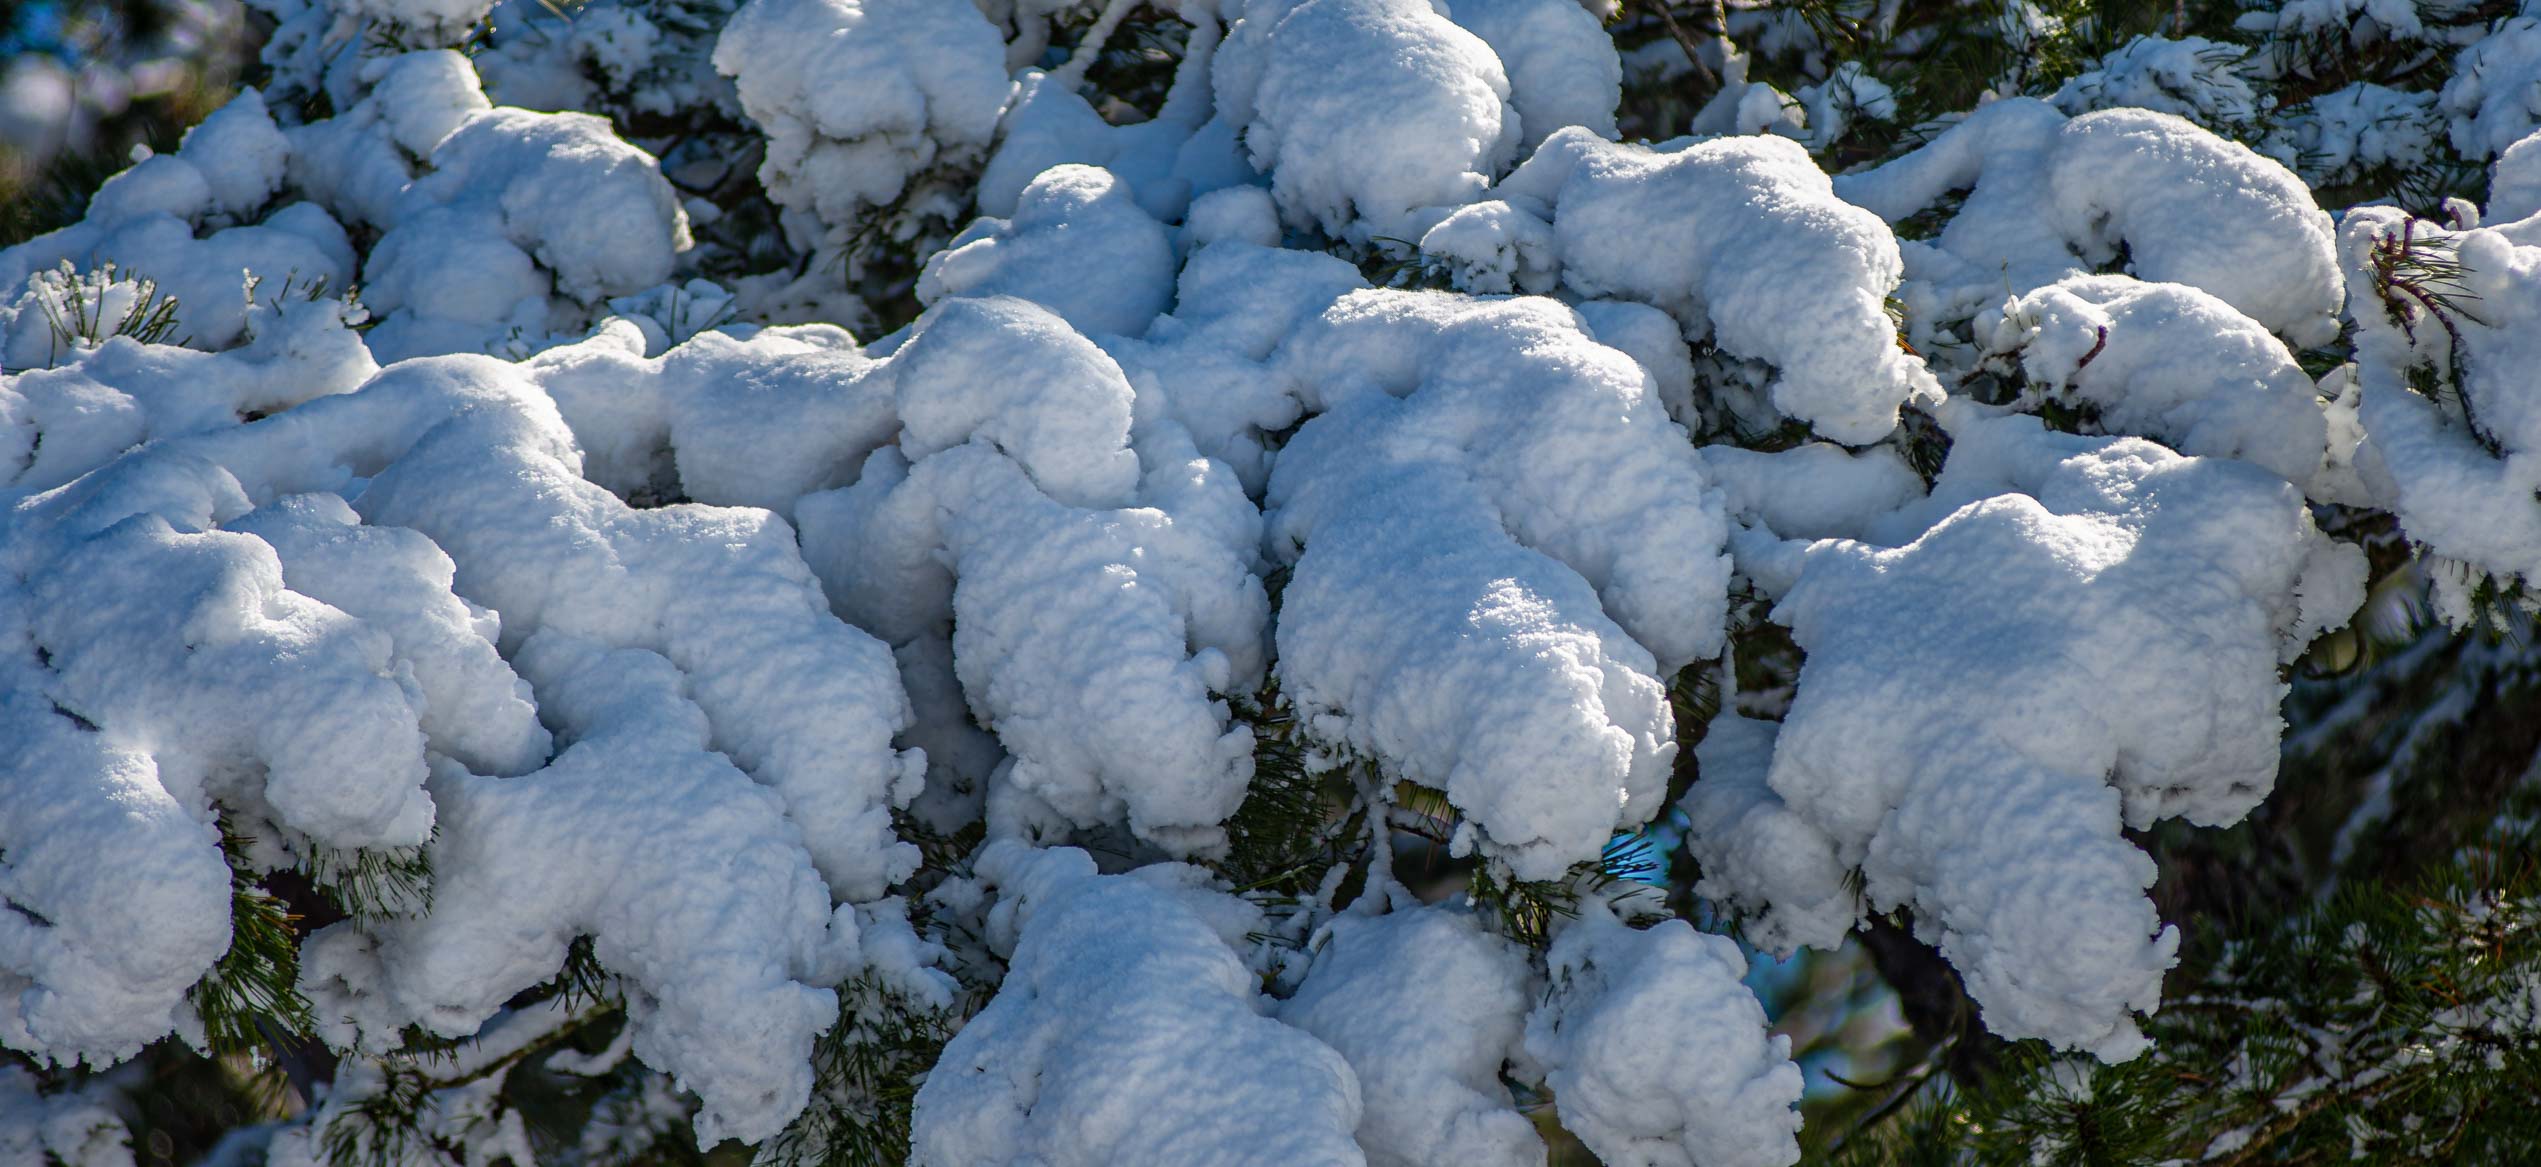 Caussols sous la neige, premières neiges dans les alpes maritimes décembre 2020 blog voyage